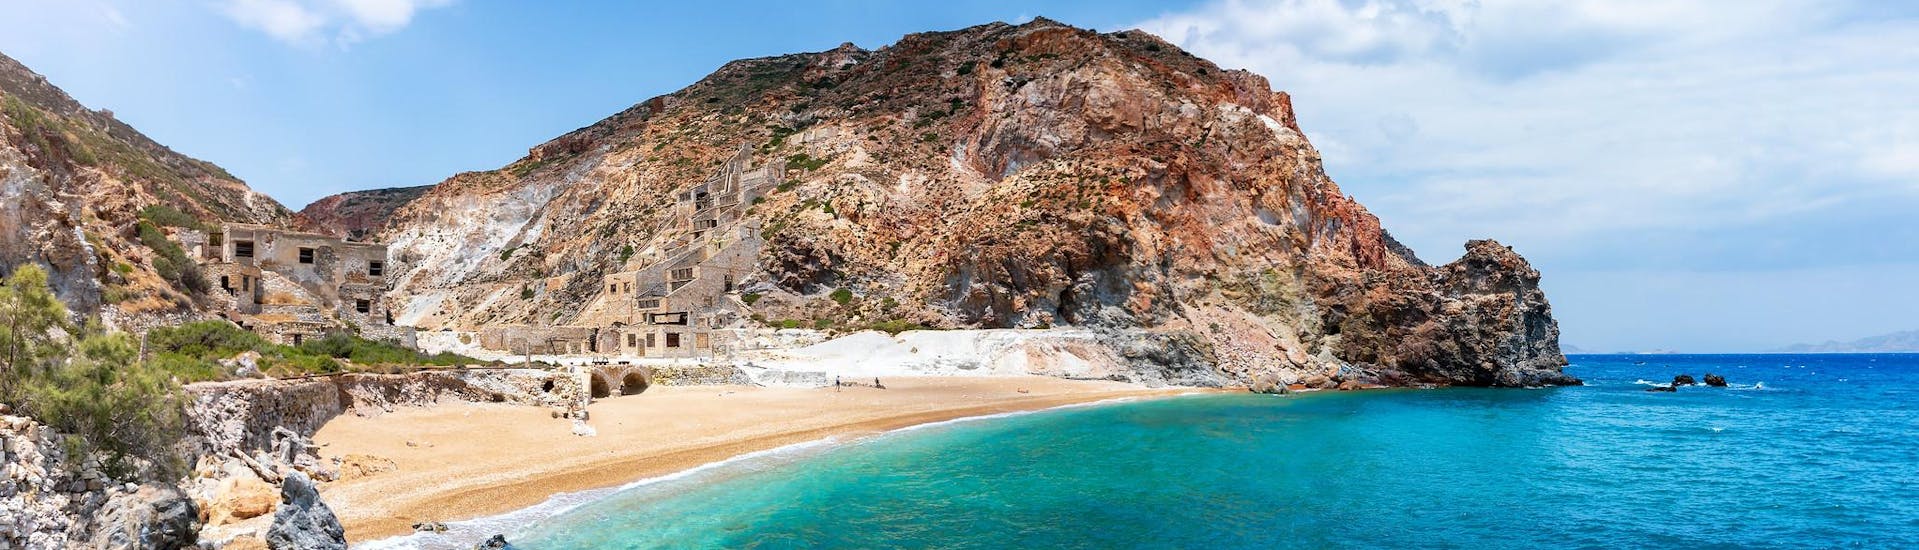 La remota playa de Thiorichia, en la isla de Milos, que se puede visitar con un paseo en barco.